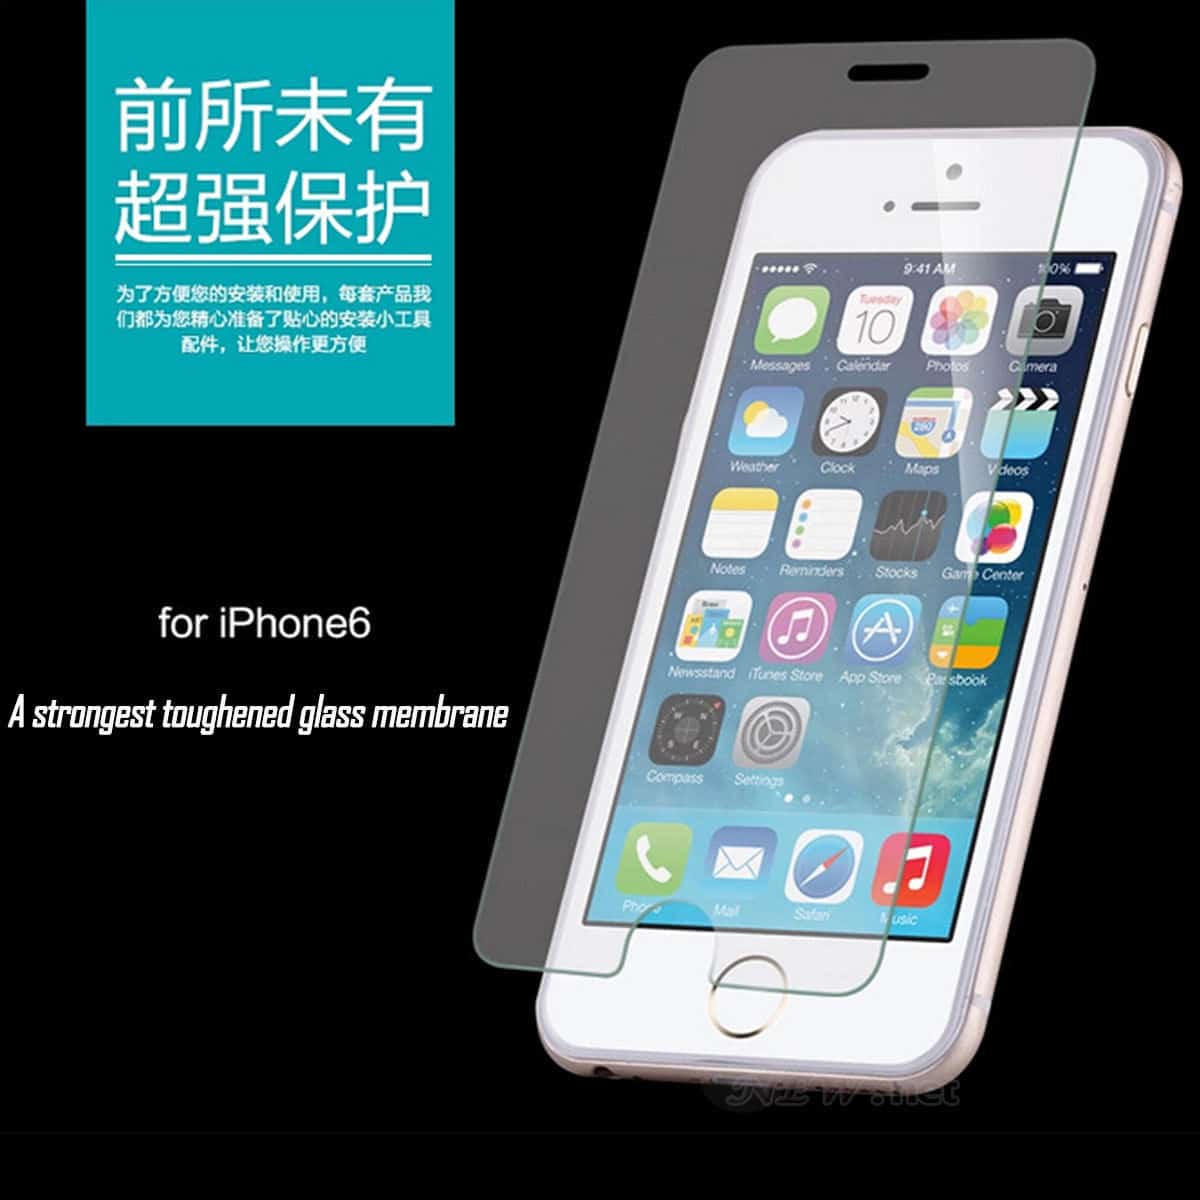 Screen Protector aus Echtglas (Tempered Glass) für iPhone 4, 5 und 6 und viele andere Marken ab nur 87 Cent (gratis Versand)!